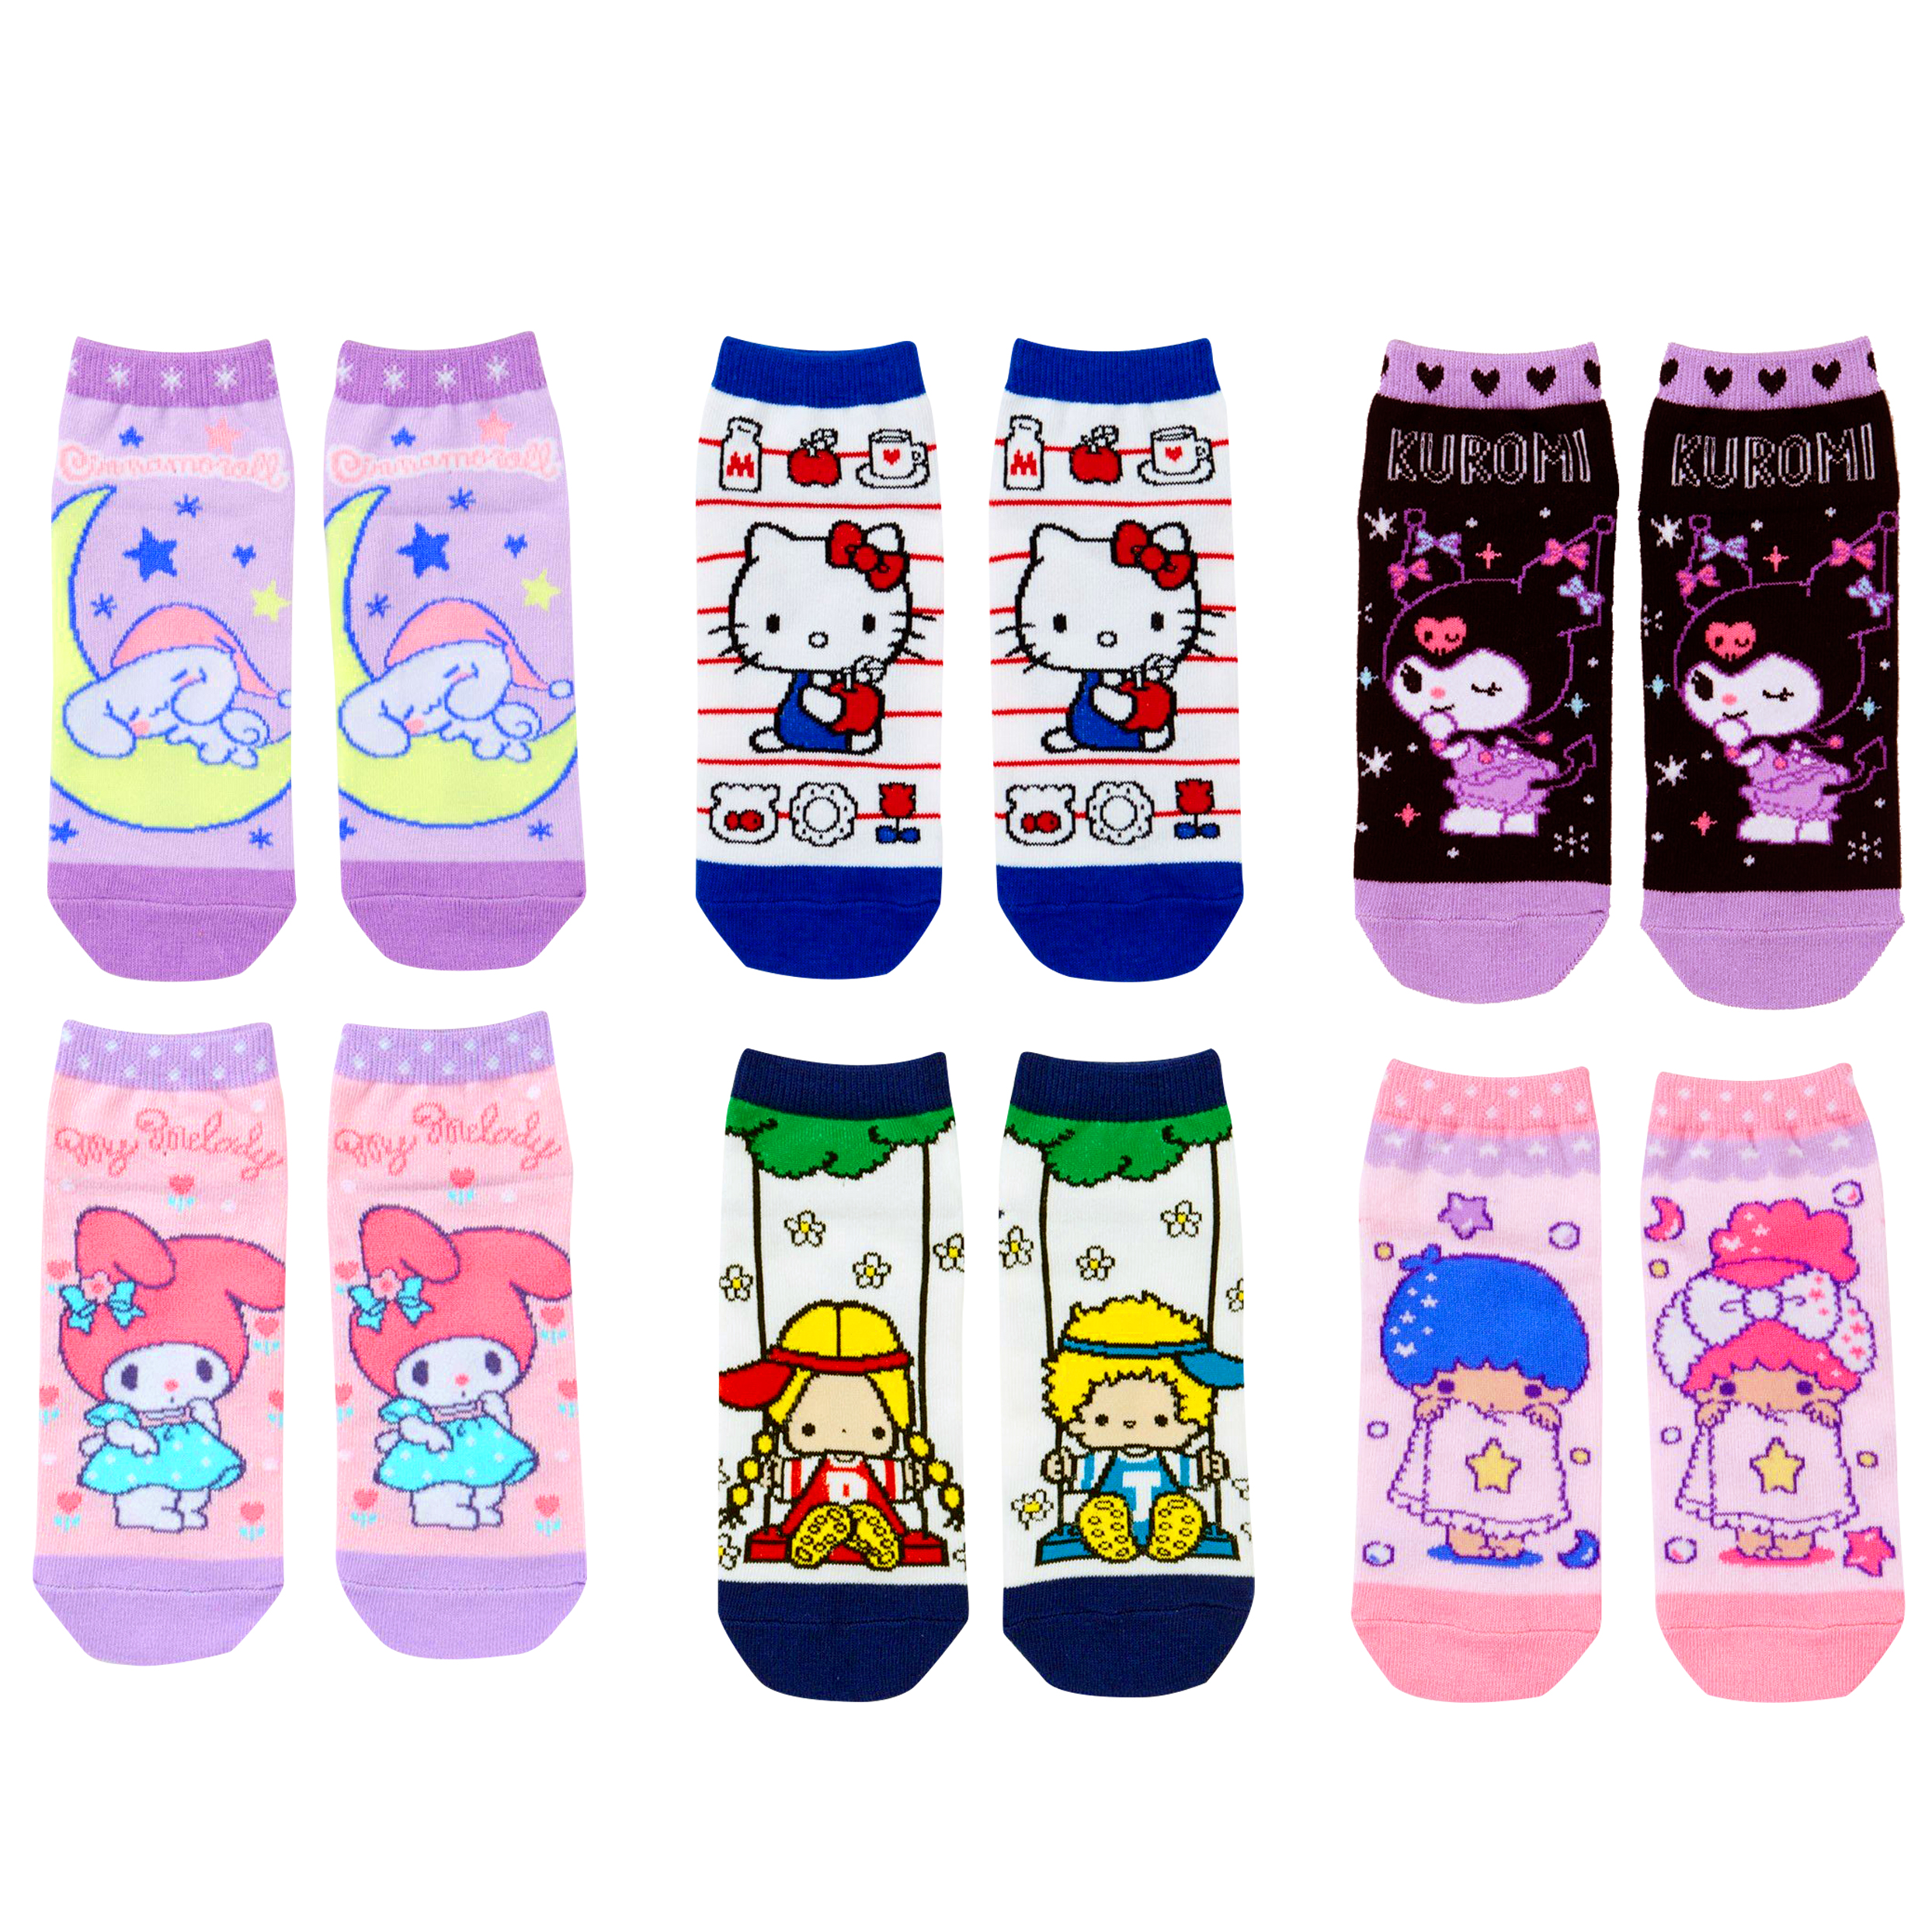 卡通直版襪 三麗鷗 Hello Kitty 美樂蒂 雙子星 酷洛米 大耳狗 帕蒂吉米  襪子 日本進口正版授權